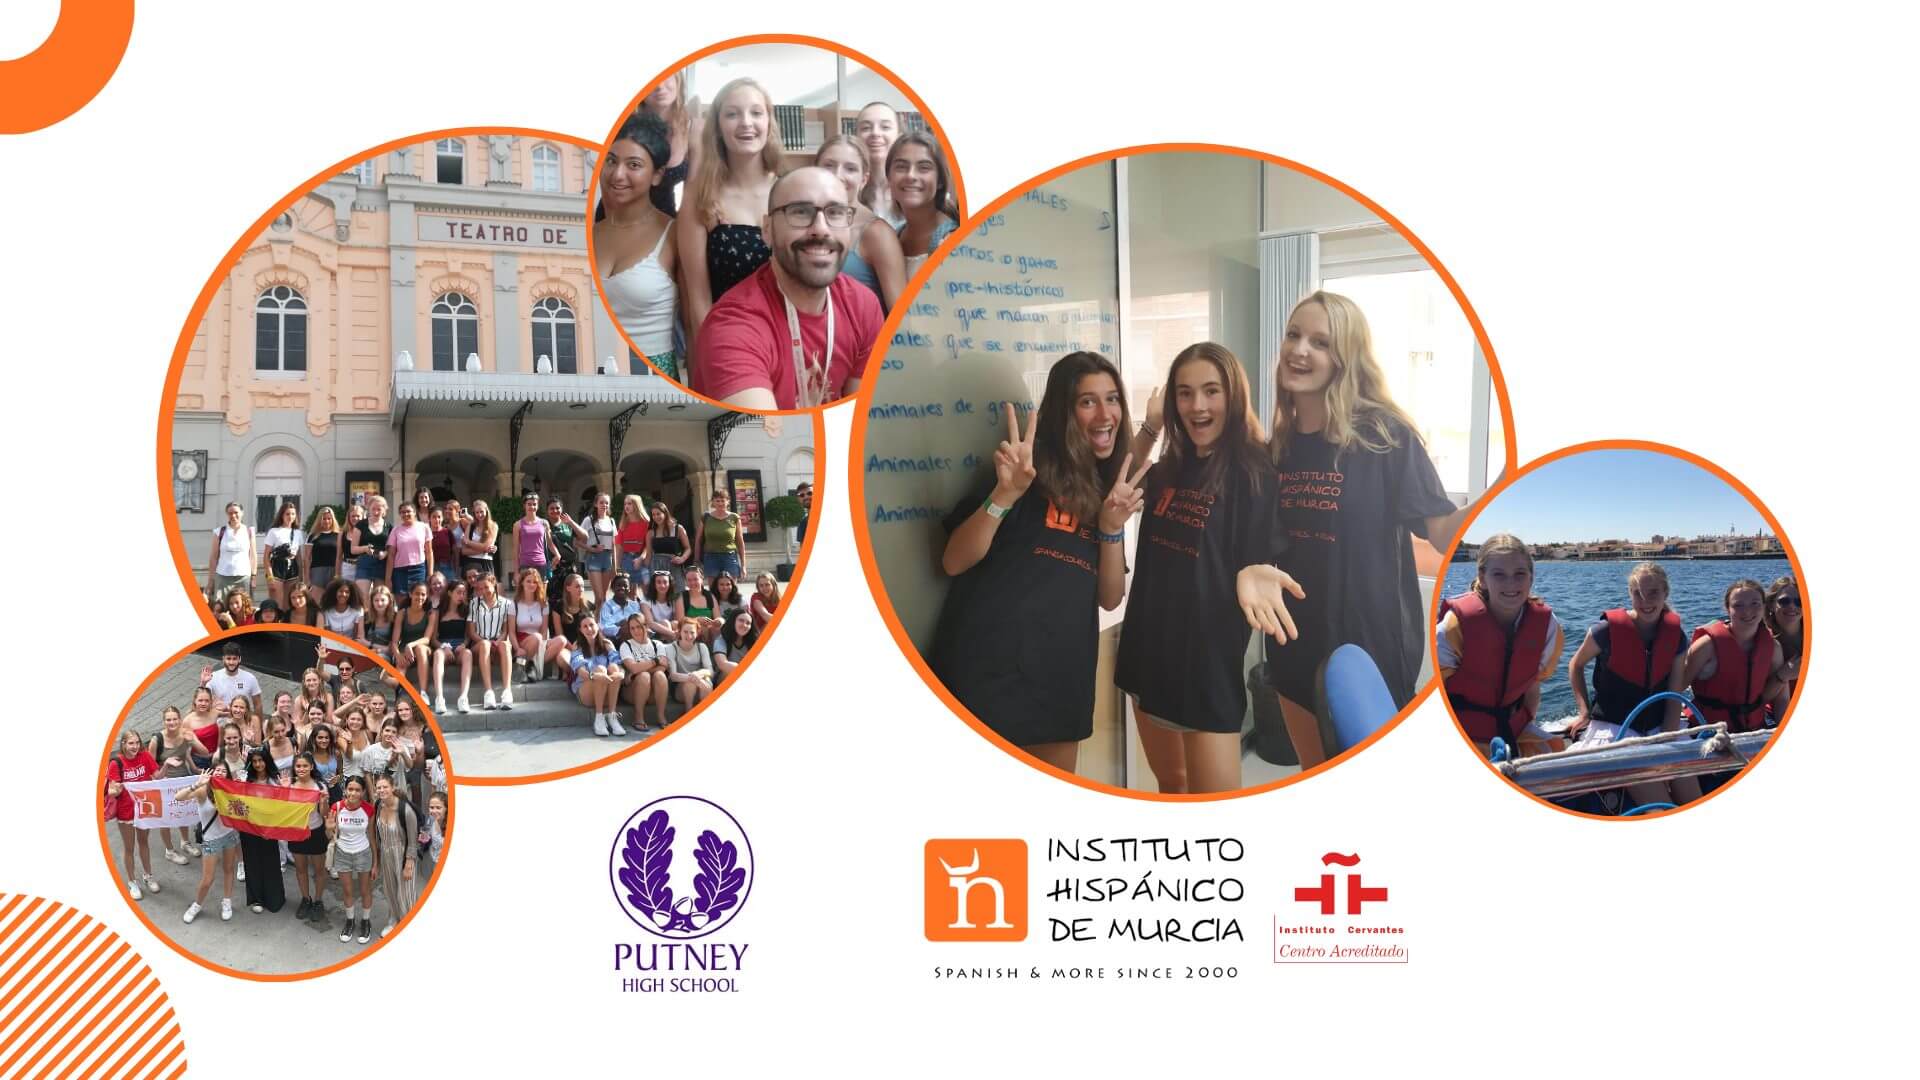 Instituto Hispánico de Murcia - Viajes Putney High School